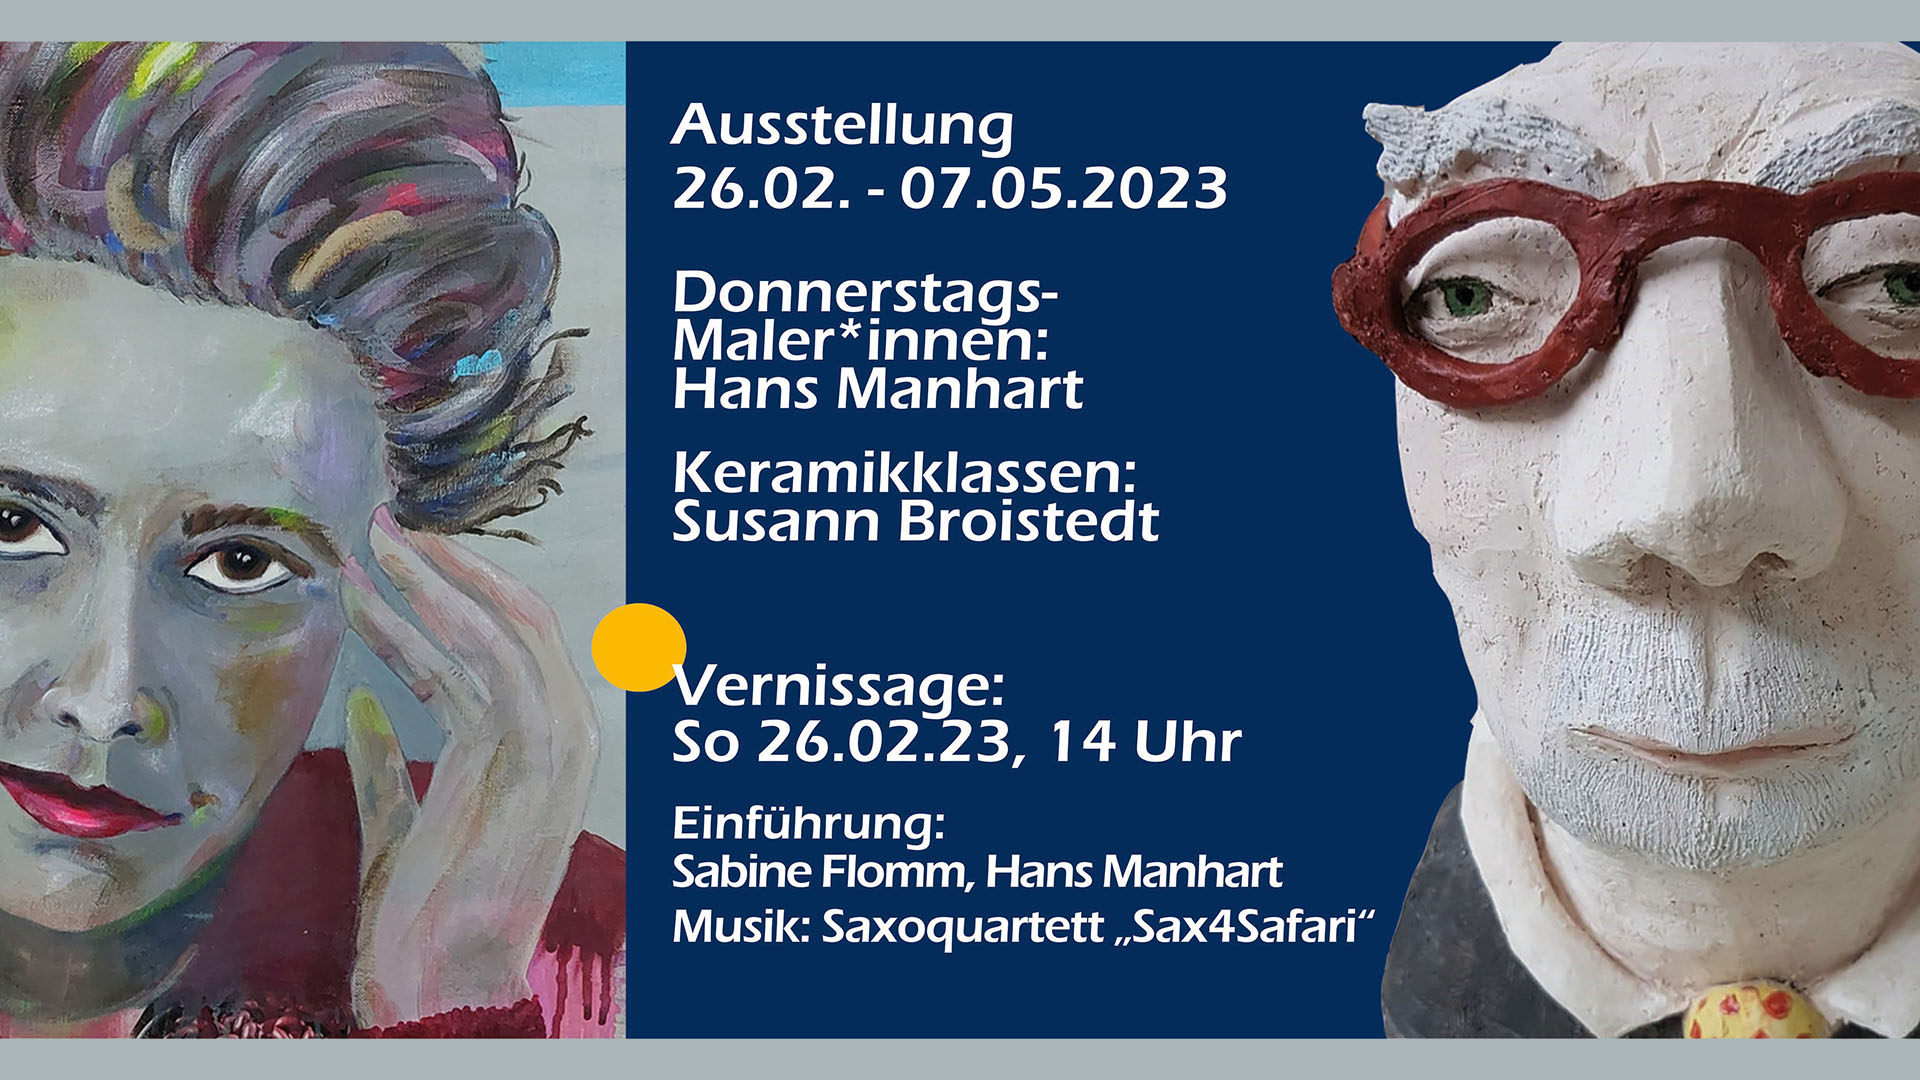 Ausstellungsplakat für eine Ausstellung mit Vernissage am 26. Februar: Keramik- und Malkurse präsentieren ihre Werke in der vhs